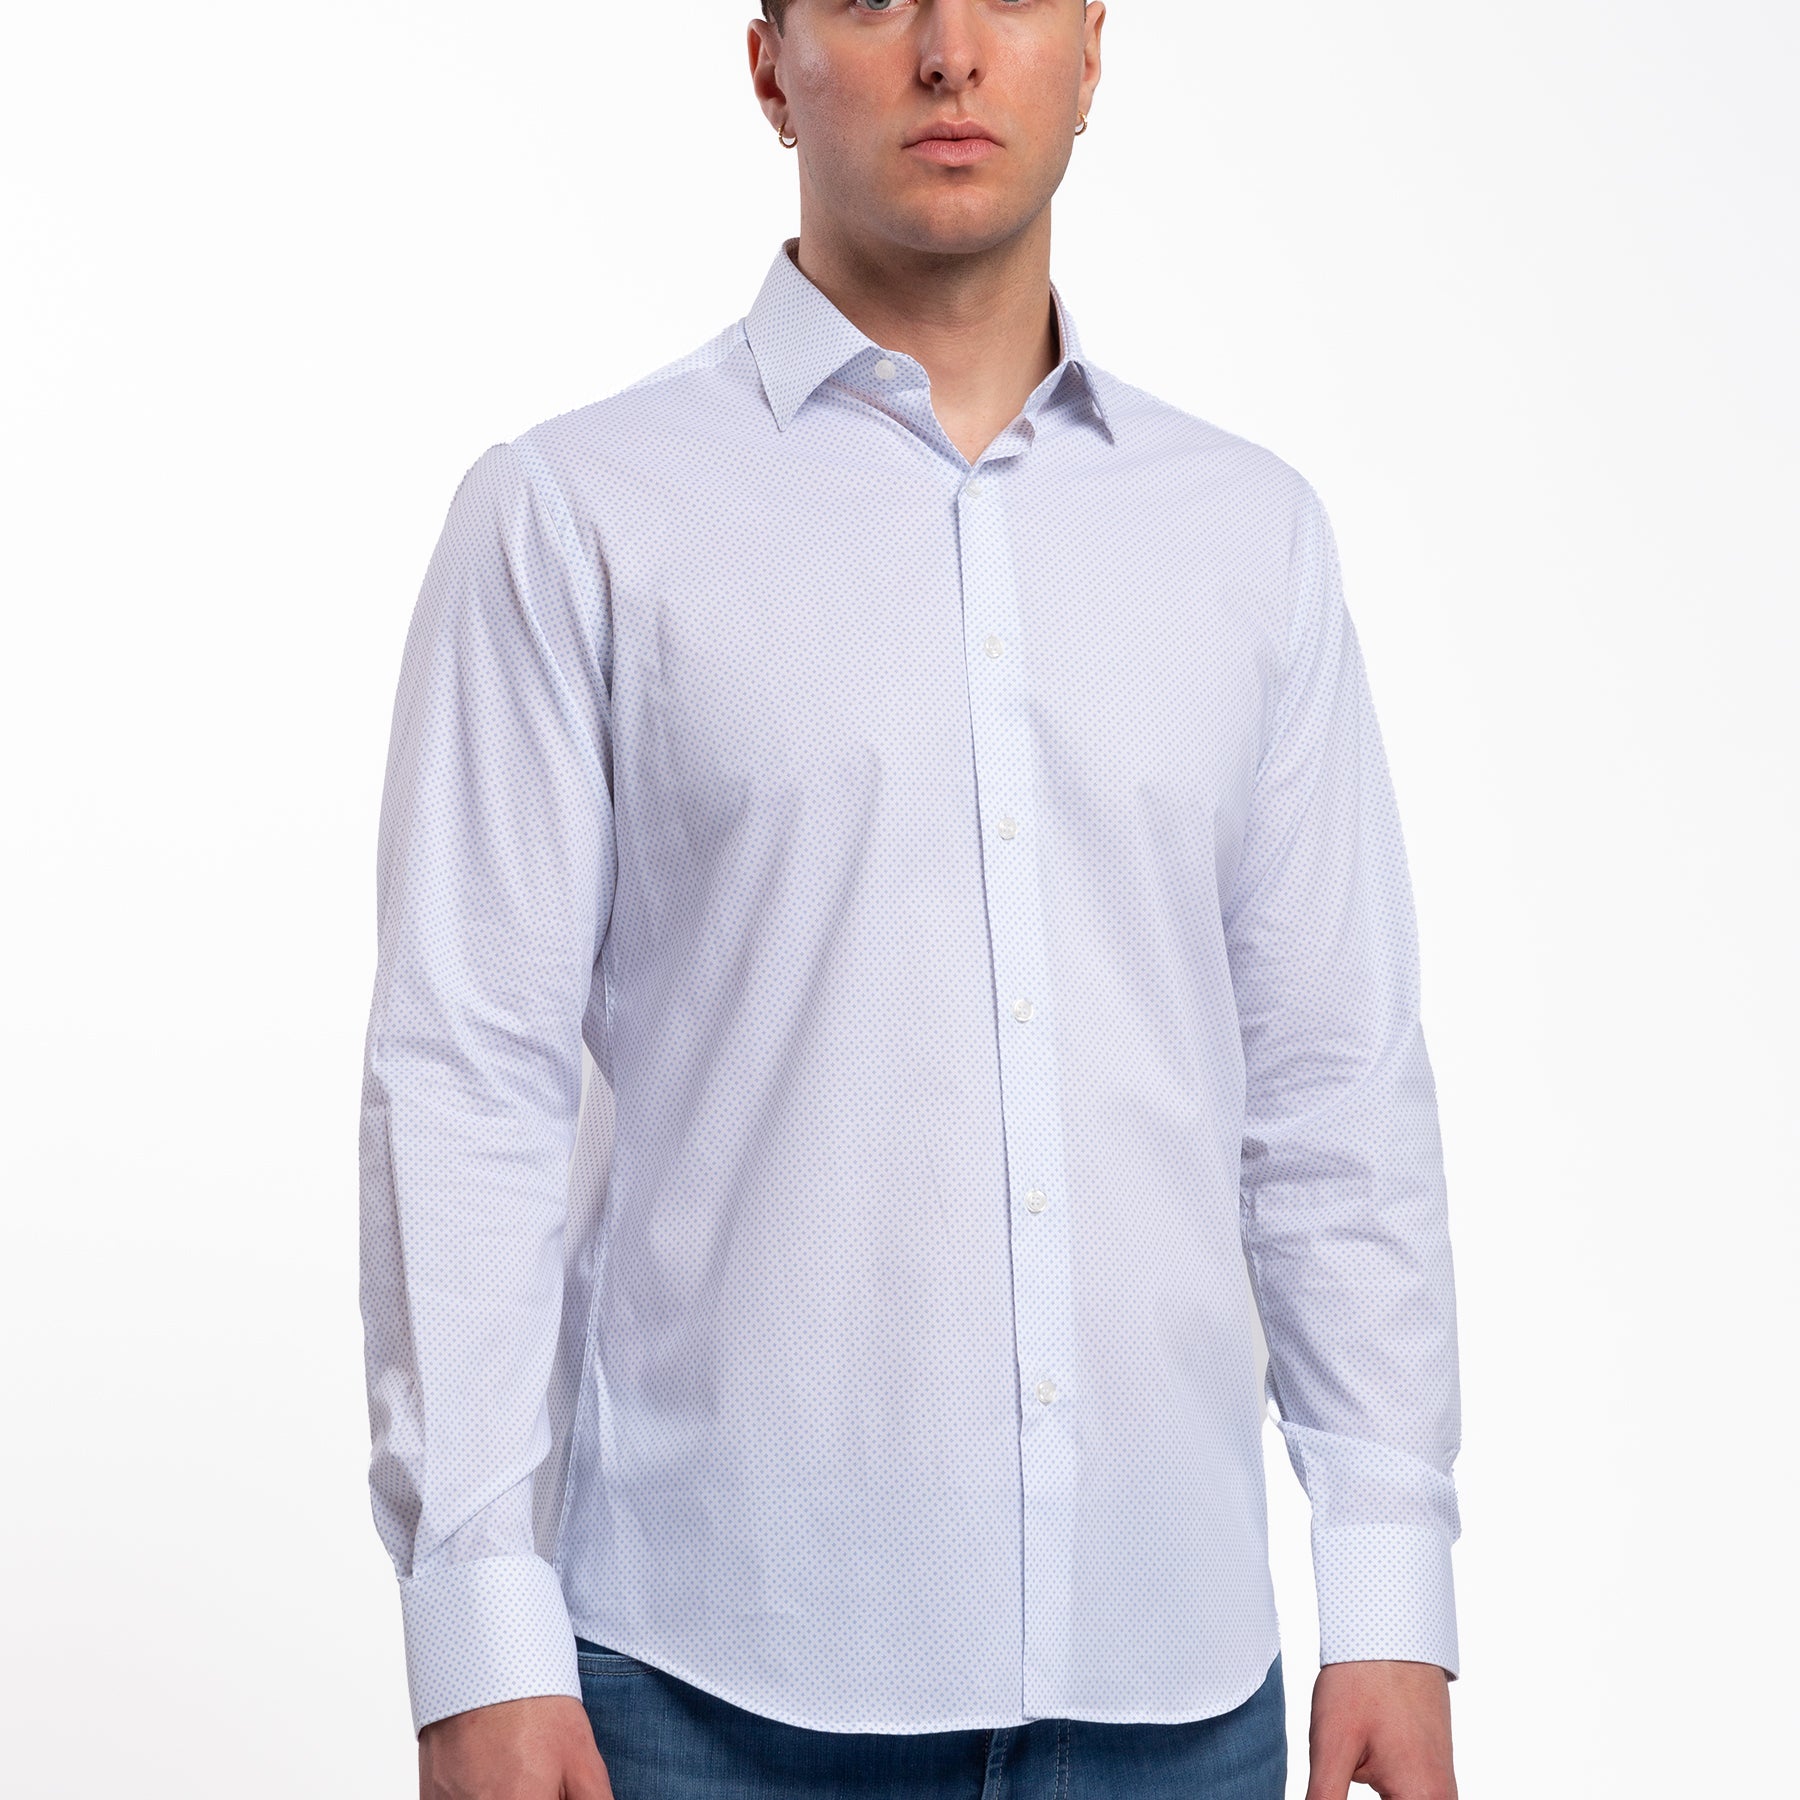 Camicia Uomo Manica Lunga Cotone Microfantasia INGRAM 5T061-30-SLI-C